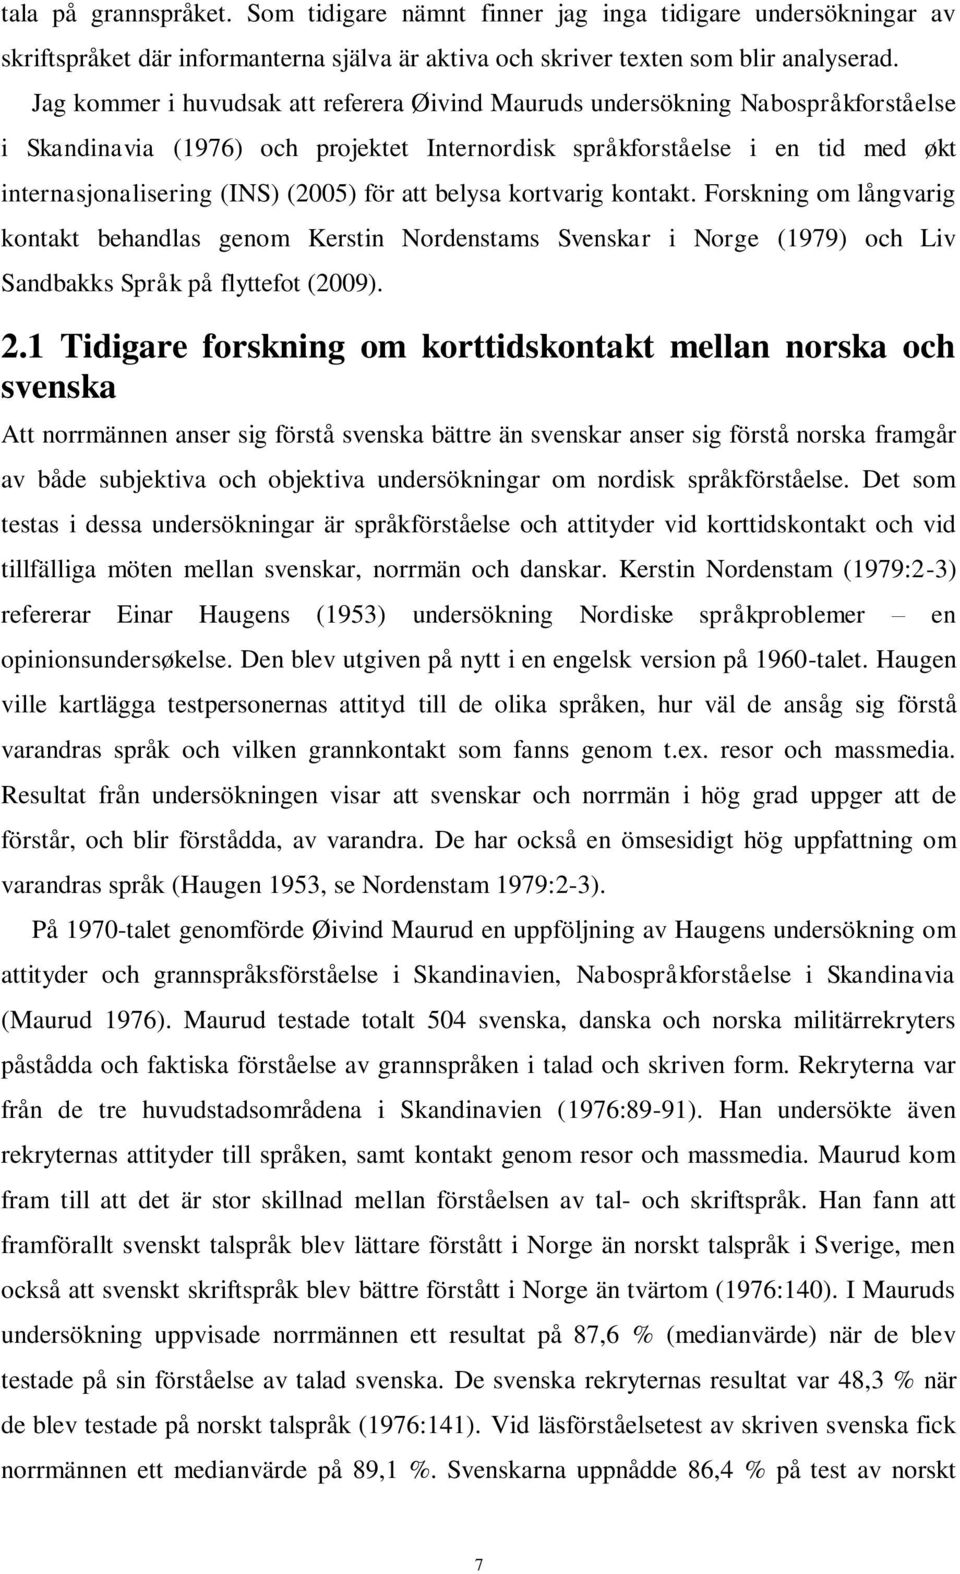 för att belysa kortvarig kontakt. Forskning om långvarig kontakt behandlas genom Kerstin Nordenstams Svenskar i Norge (1979) och Liv Sandbakks Språk på flyttefot (2009). 2.